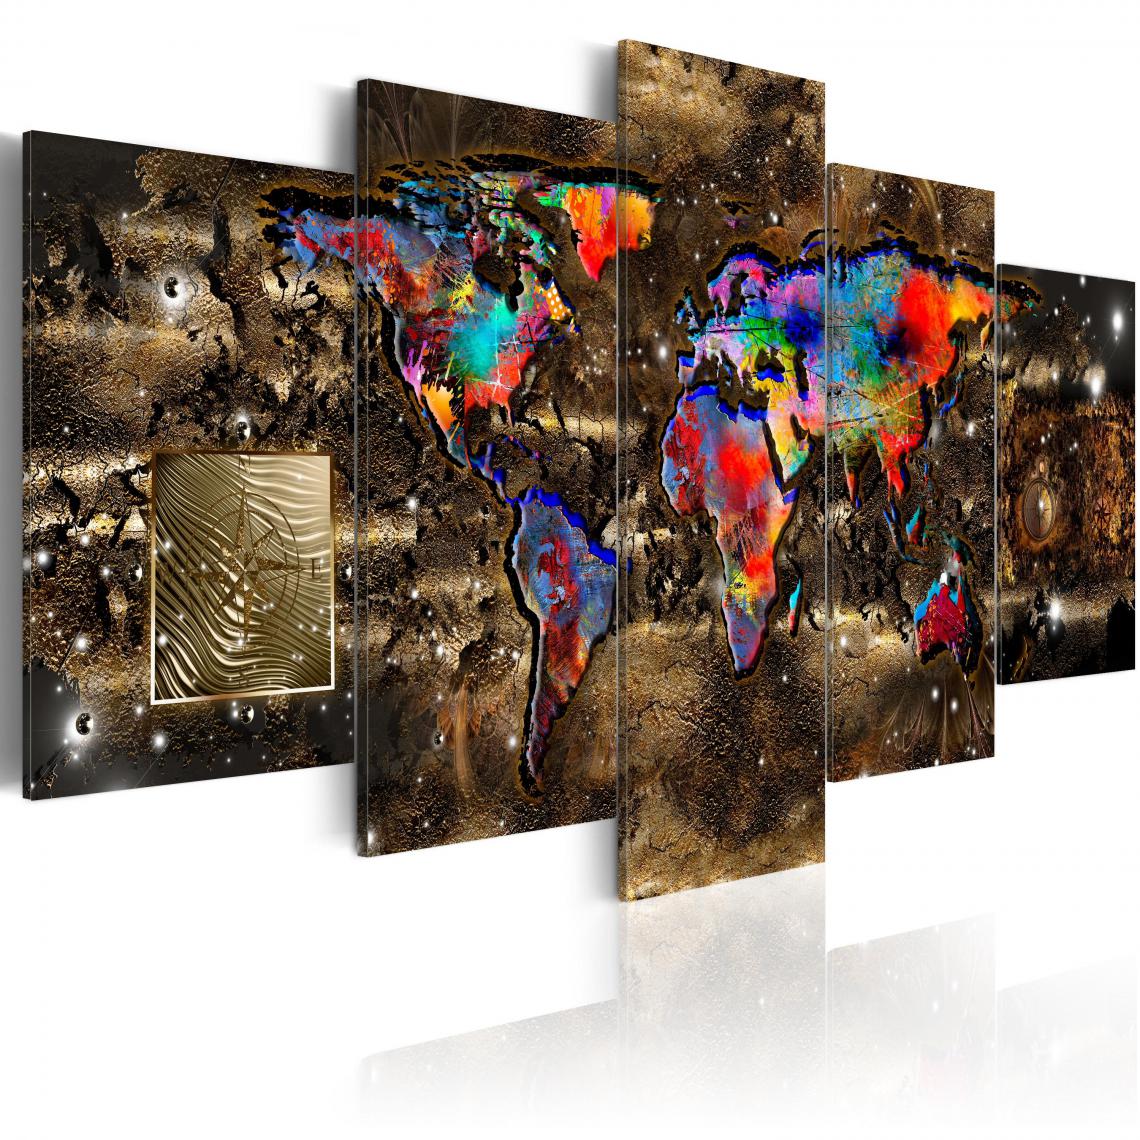 Decoshop26 - Tableau sur toile en 5 panneaux décoration murale image imprimée cadre en bois à suspendre Monde fantastique 100x50 cm 11_0004463 - Tableaux, peintures